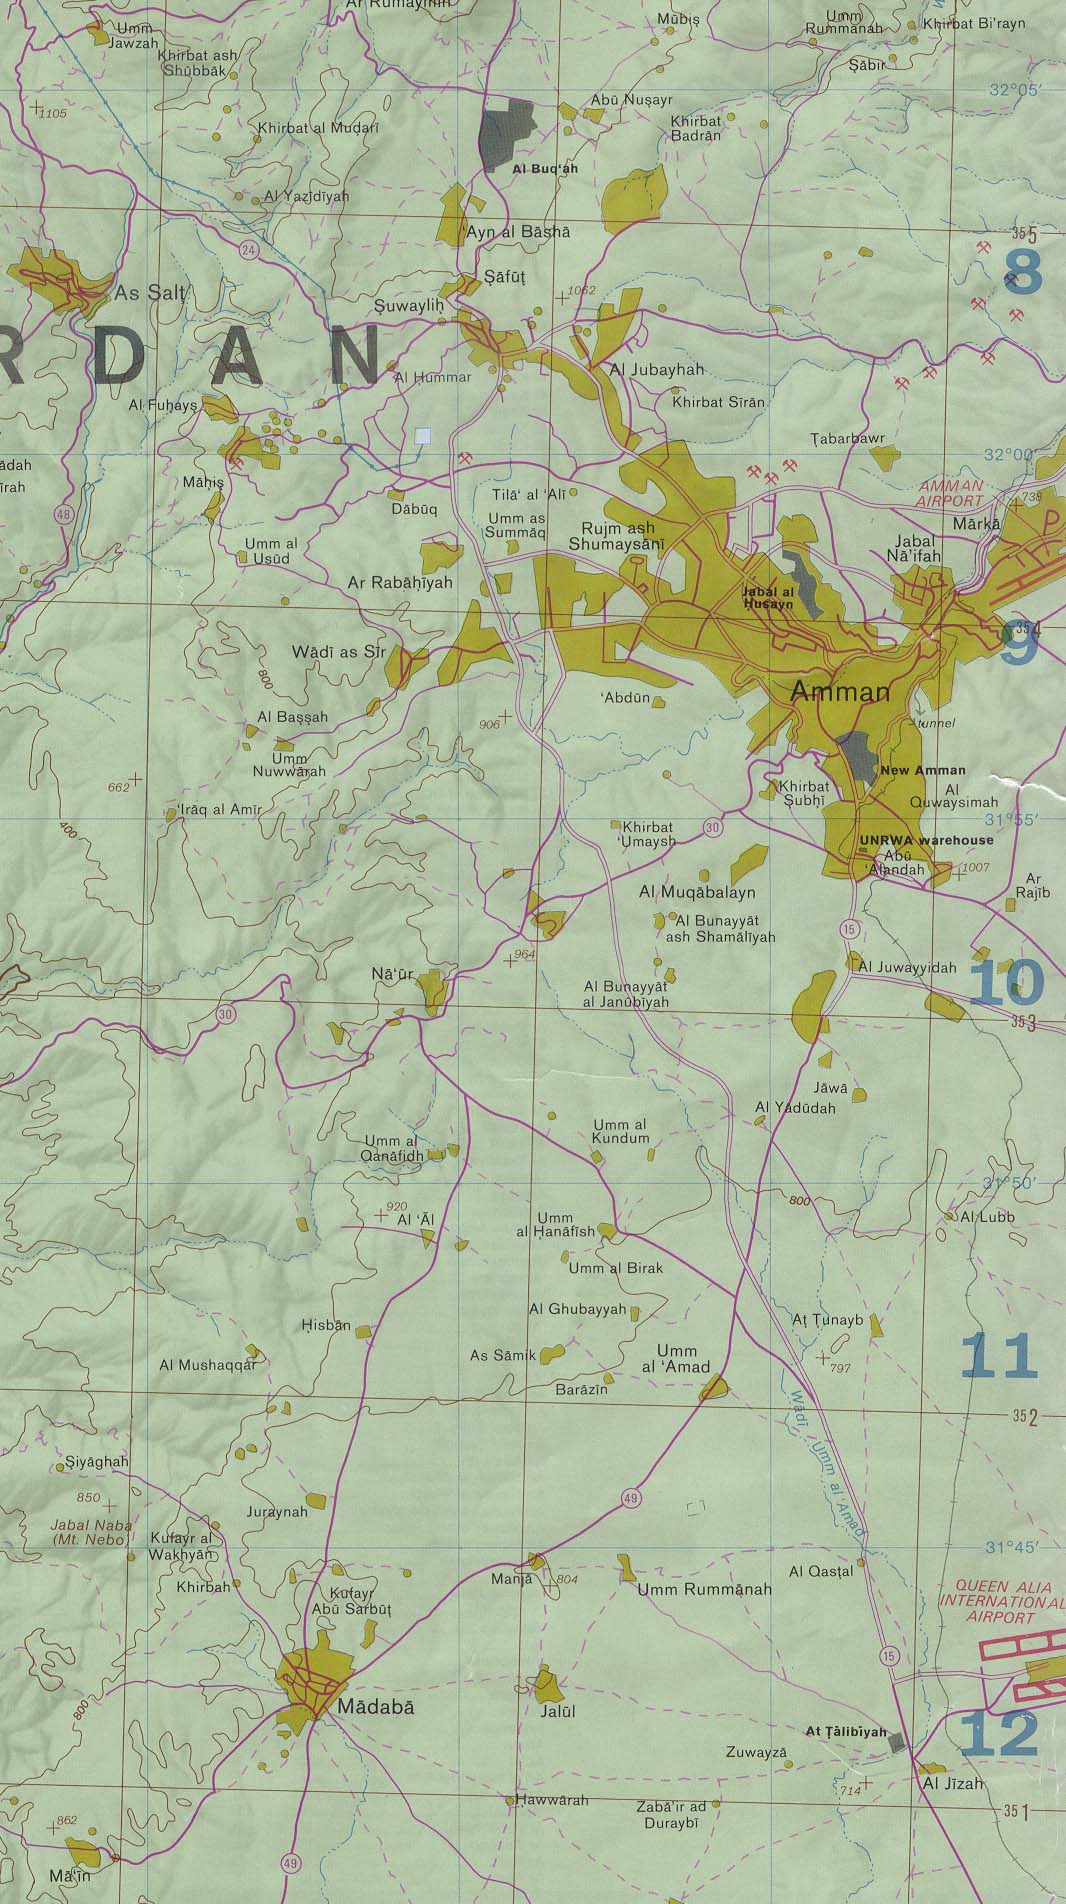 Map Of West Bank Amman, Jordan Region (278K) 